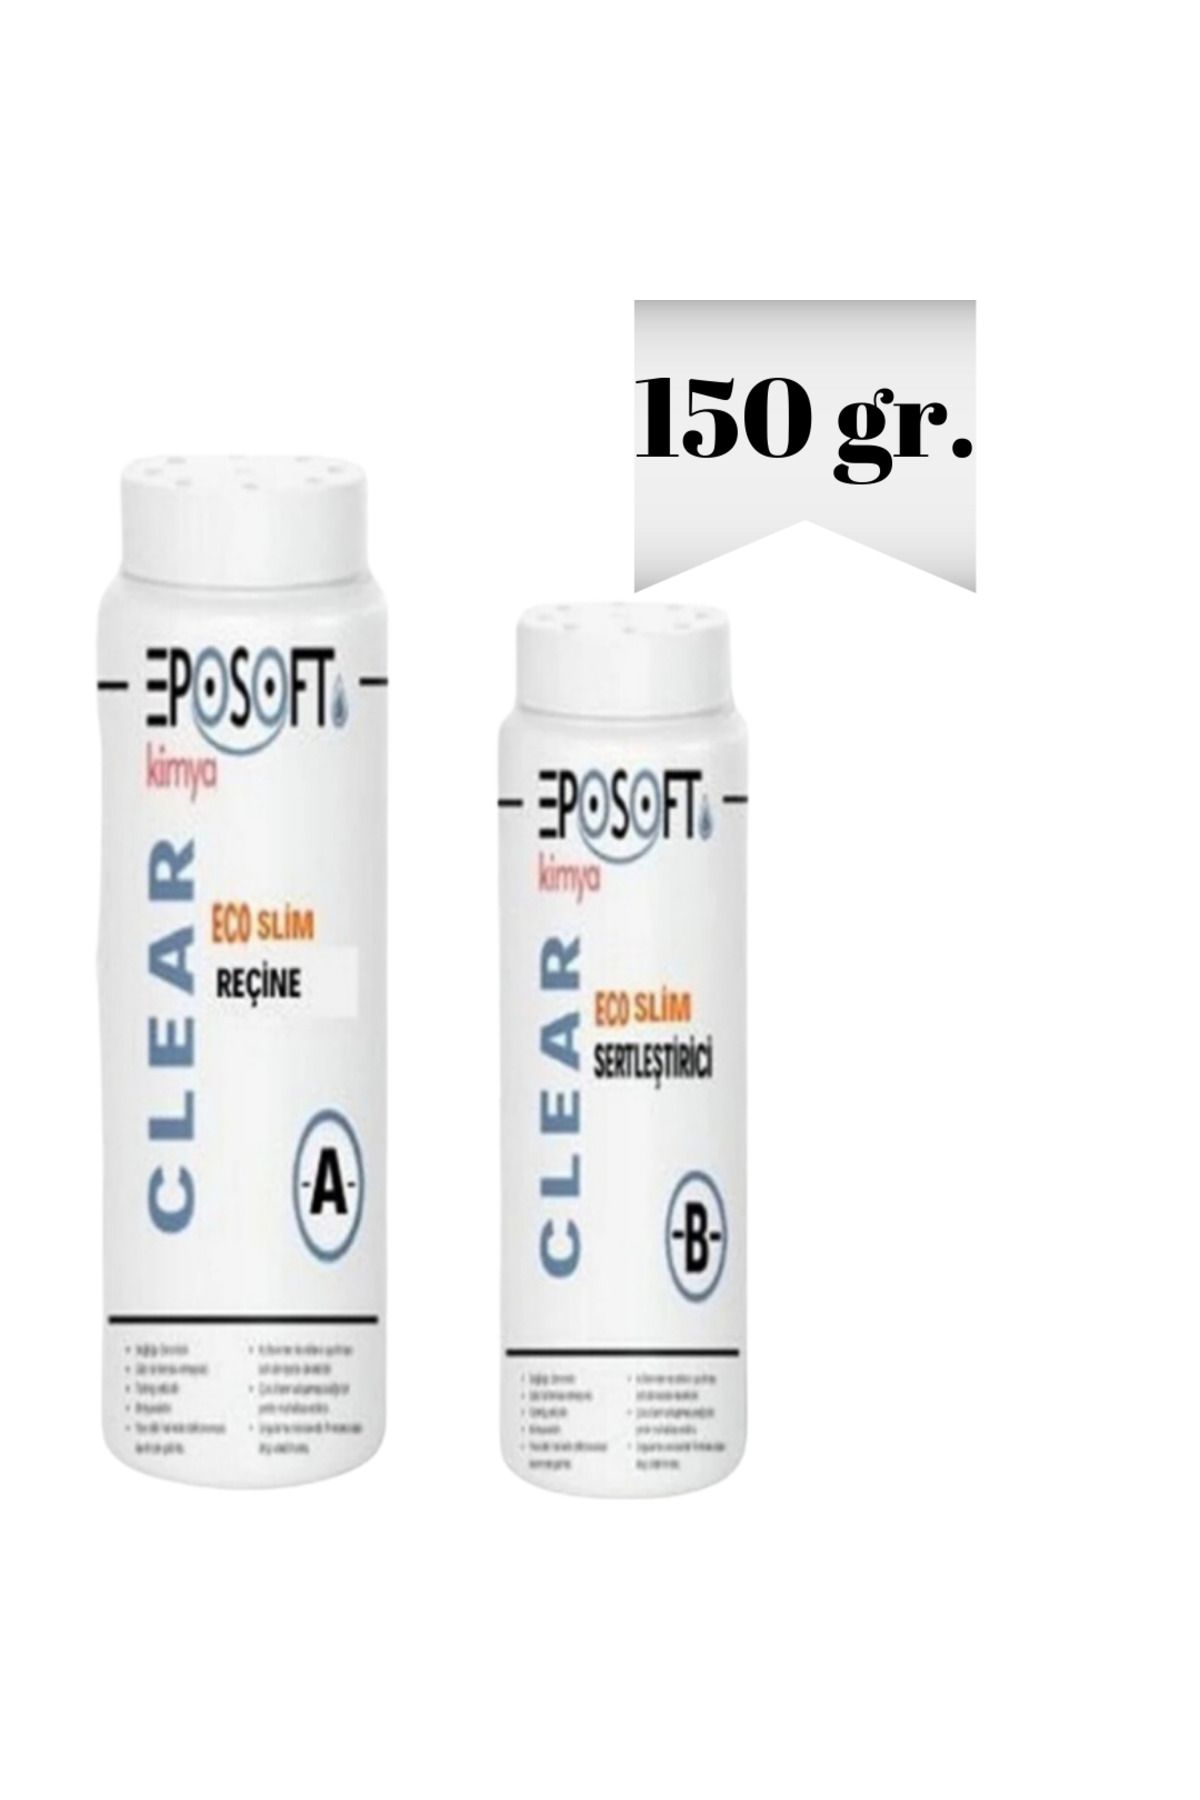 Eposoft Kimya Ecosilim Şeffaf Epoksi Reçine İnce Döküm 150 Gr (100 gr. A + 50 gr. B)